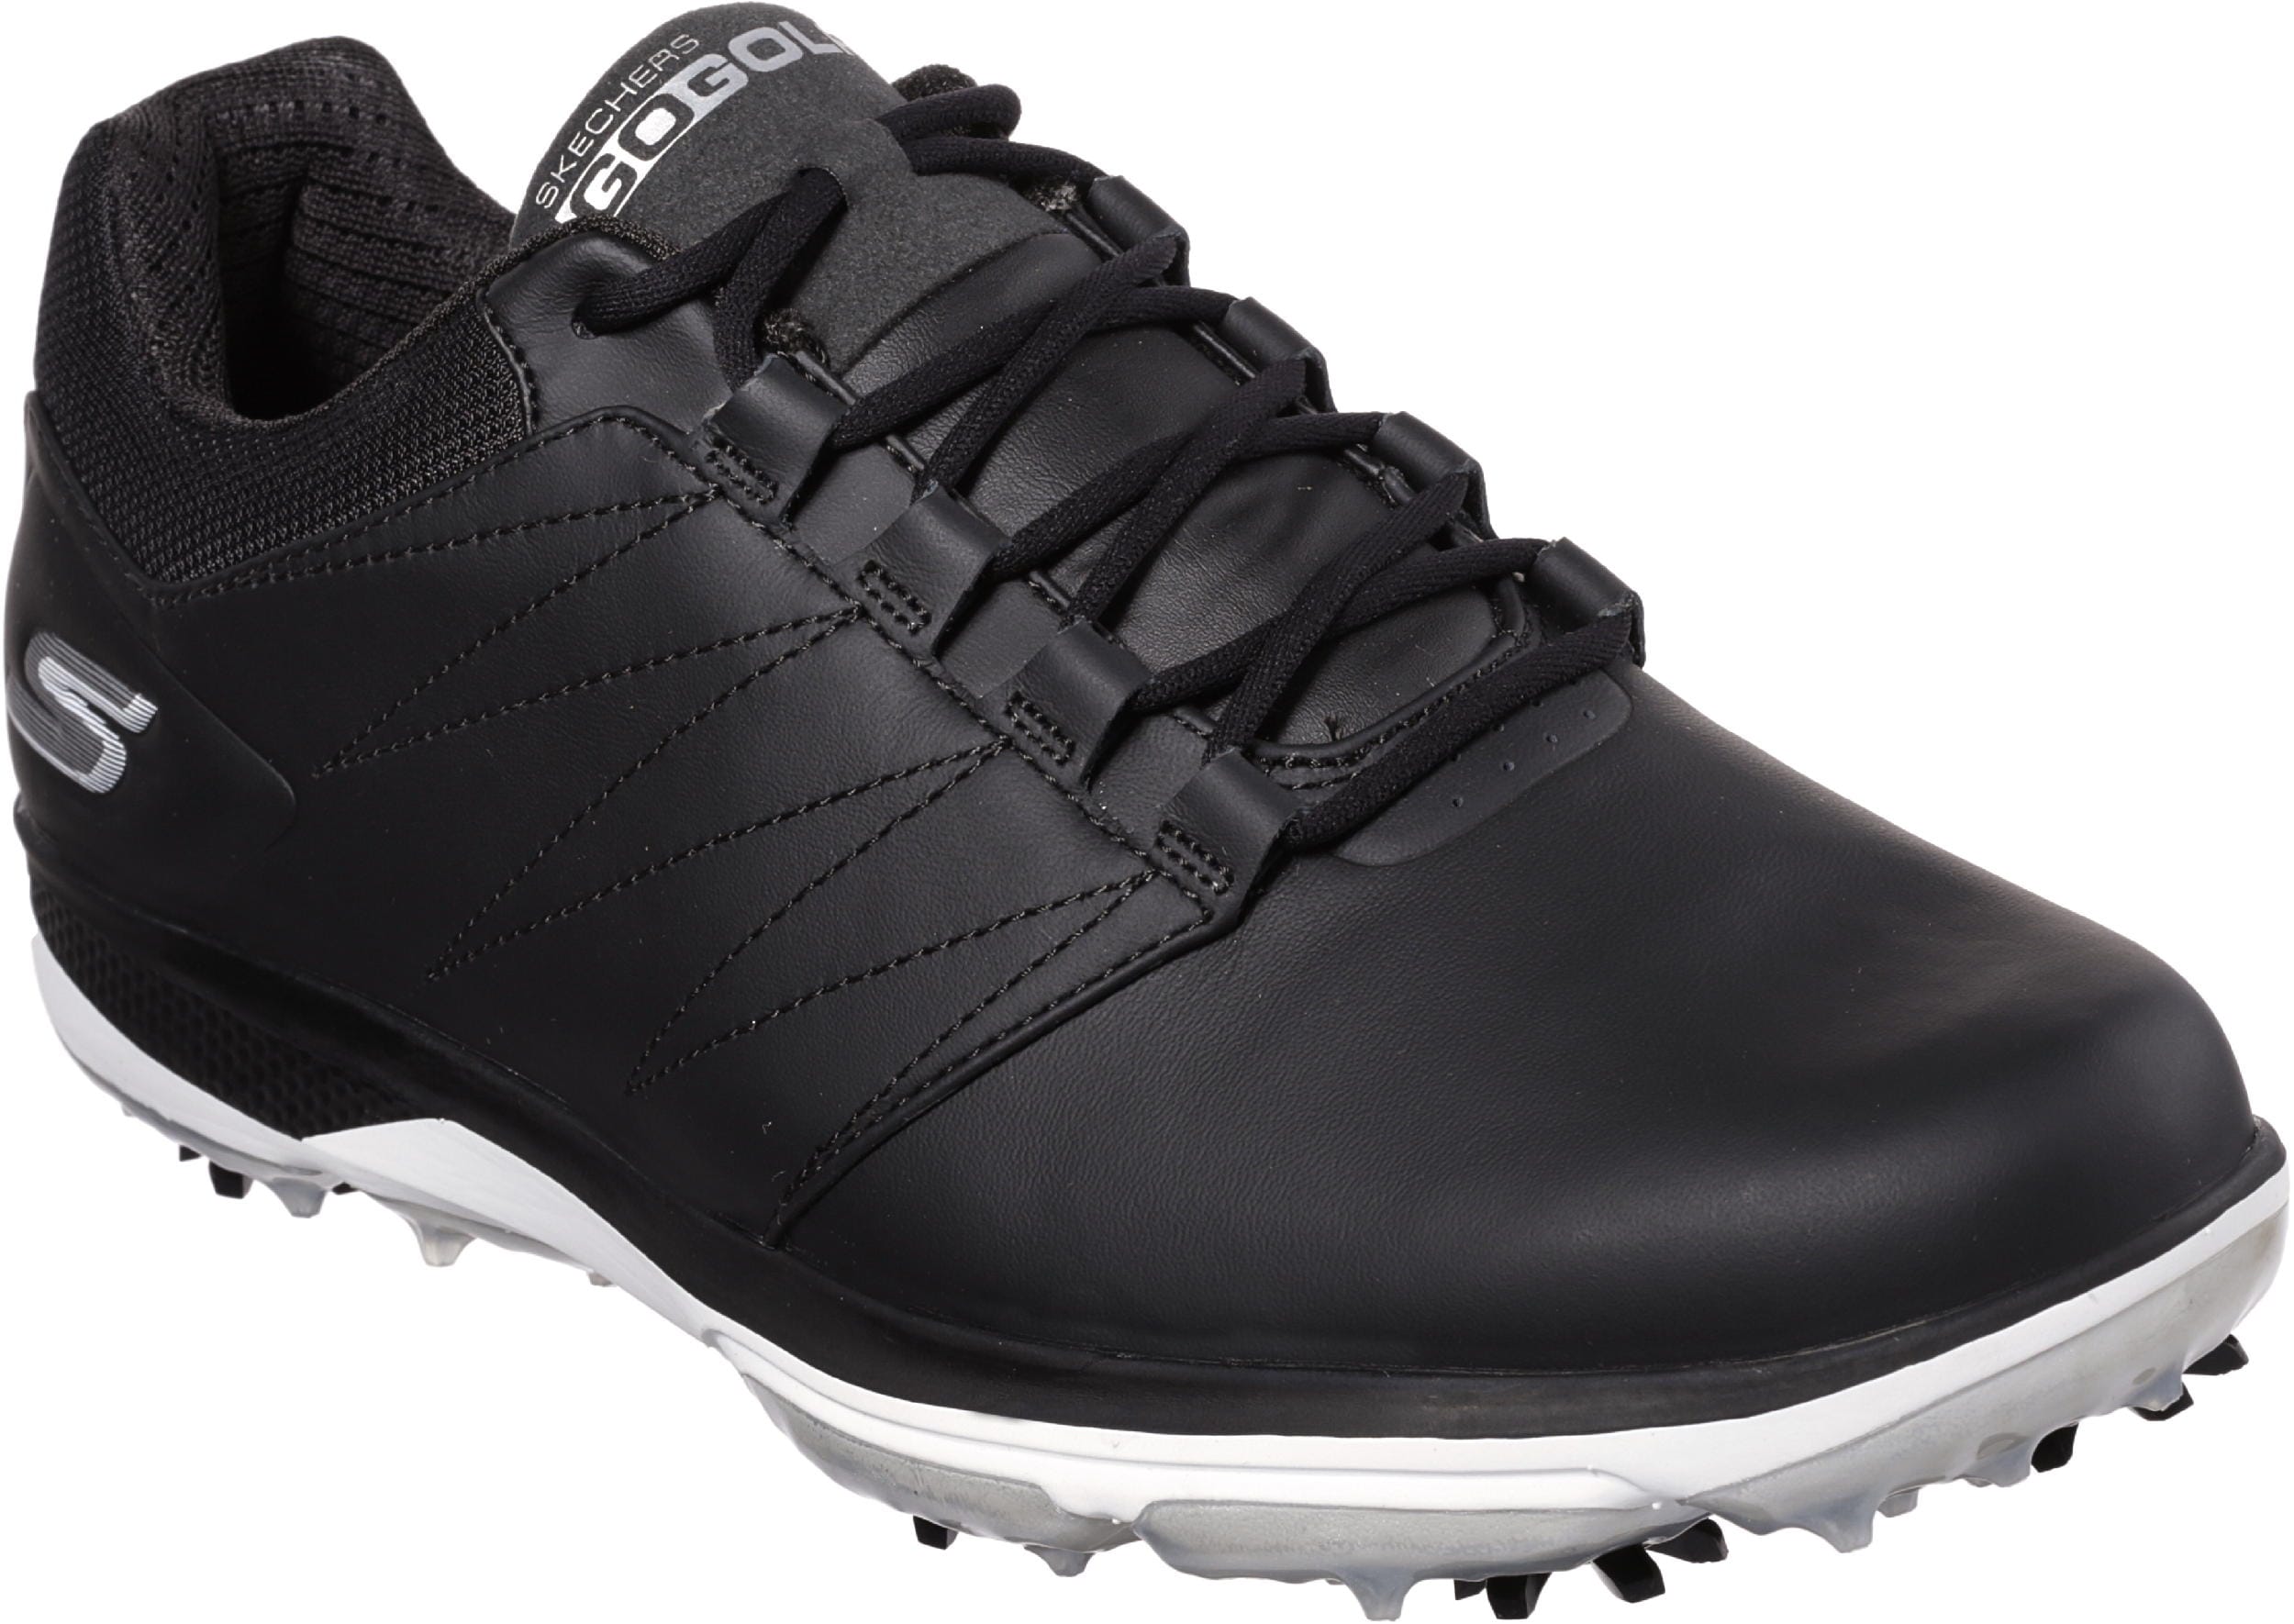 Skechers Go Golf Pro V 4 Golfschuh, black/white